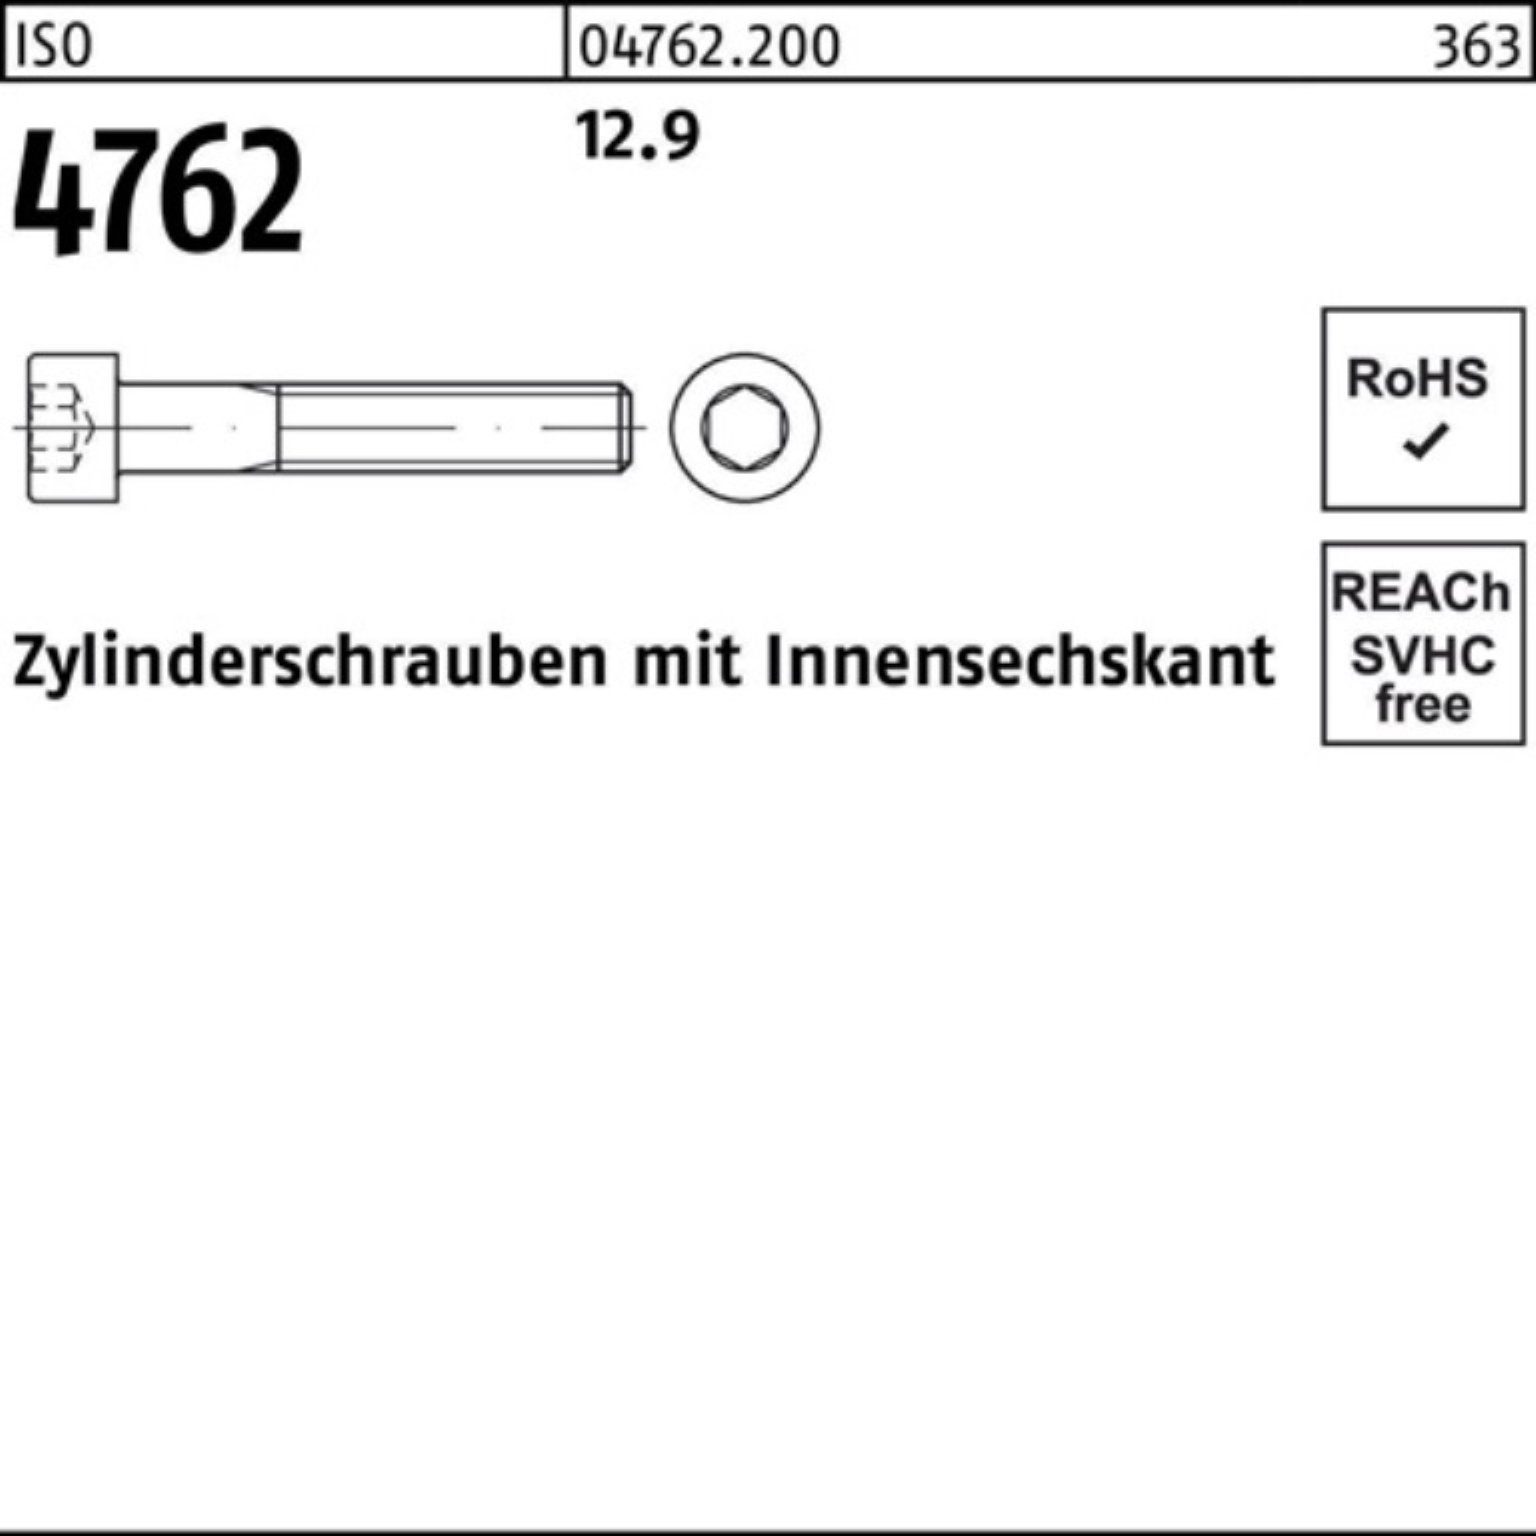 Innen-6kt Pack 25 60 Zylinderschraube 12.9 ISO M24x Zylinderschraube 100er Stück 4762 Reyher